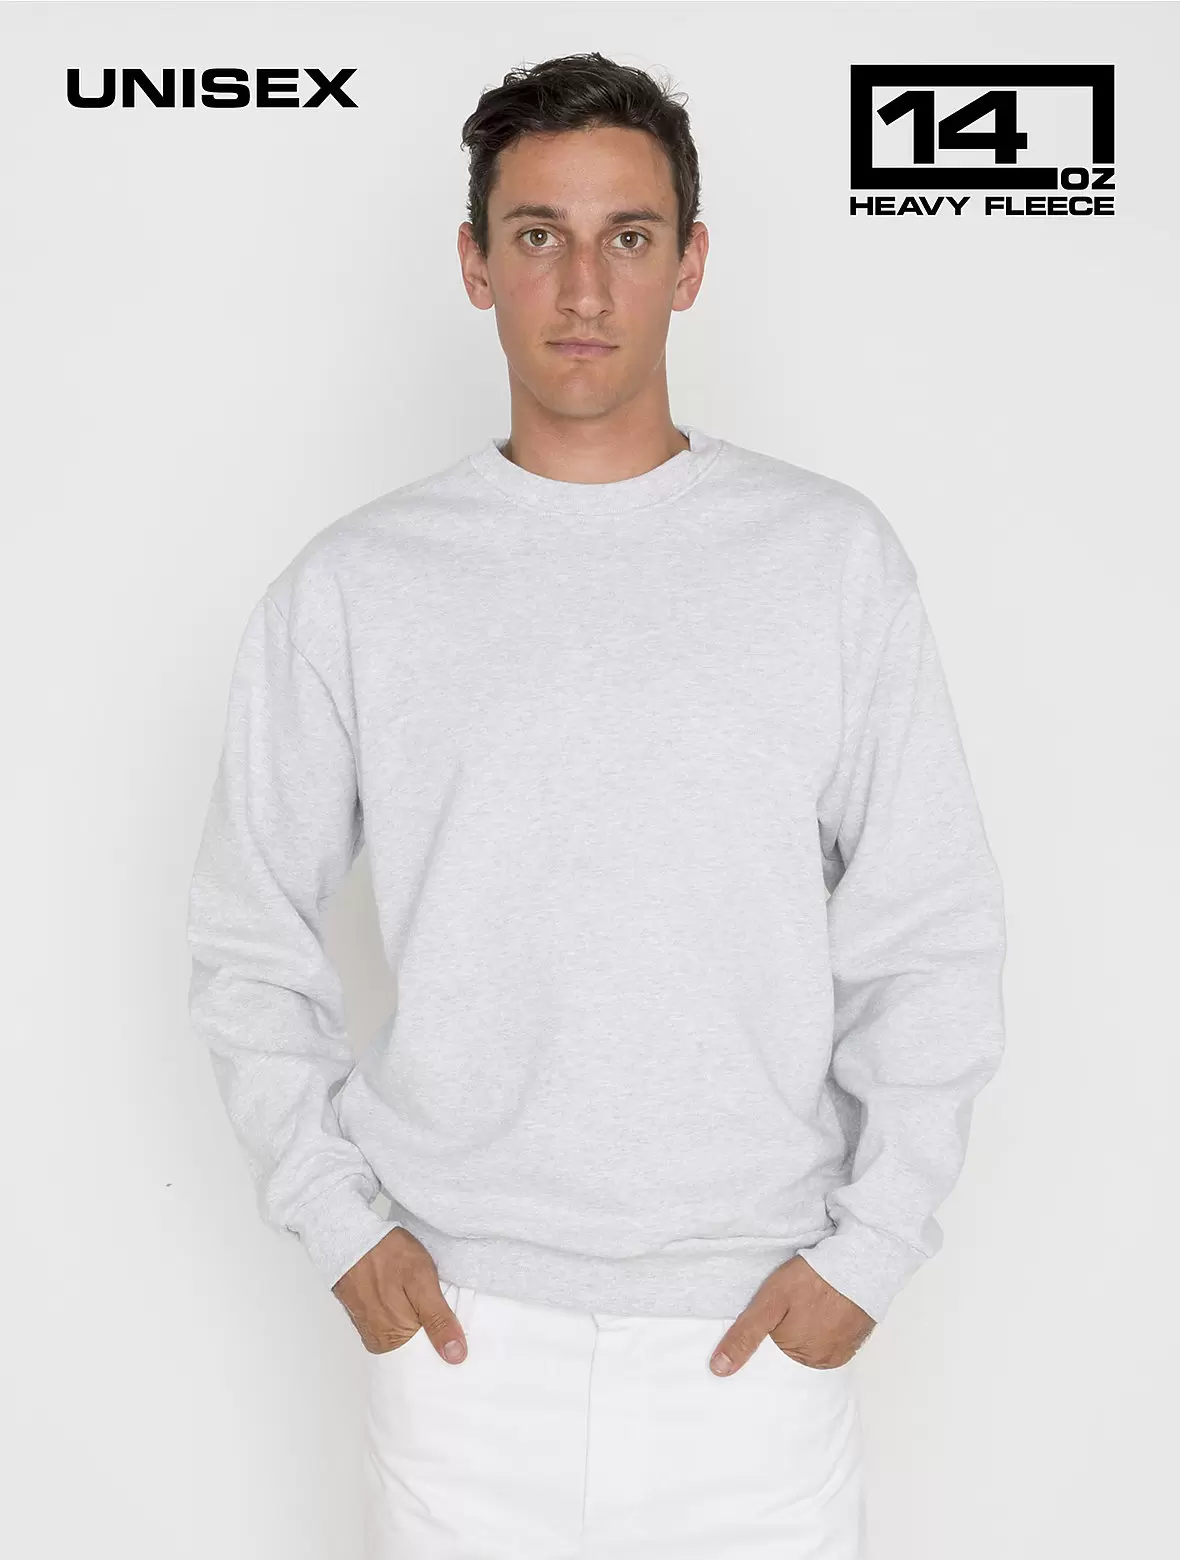 Los Angeles Apparel HF07GD Heavy Fleece Pullover Crewneck Blank Sweatshirt  14 oz - From $25.15